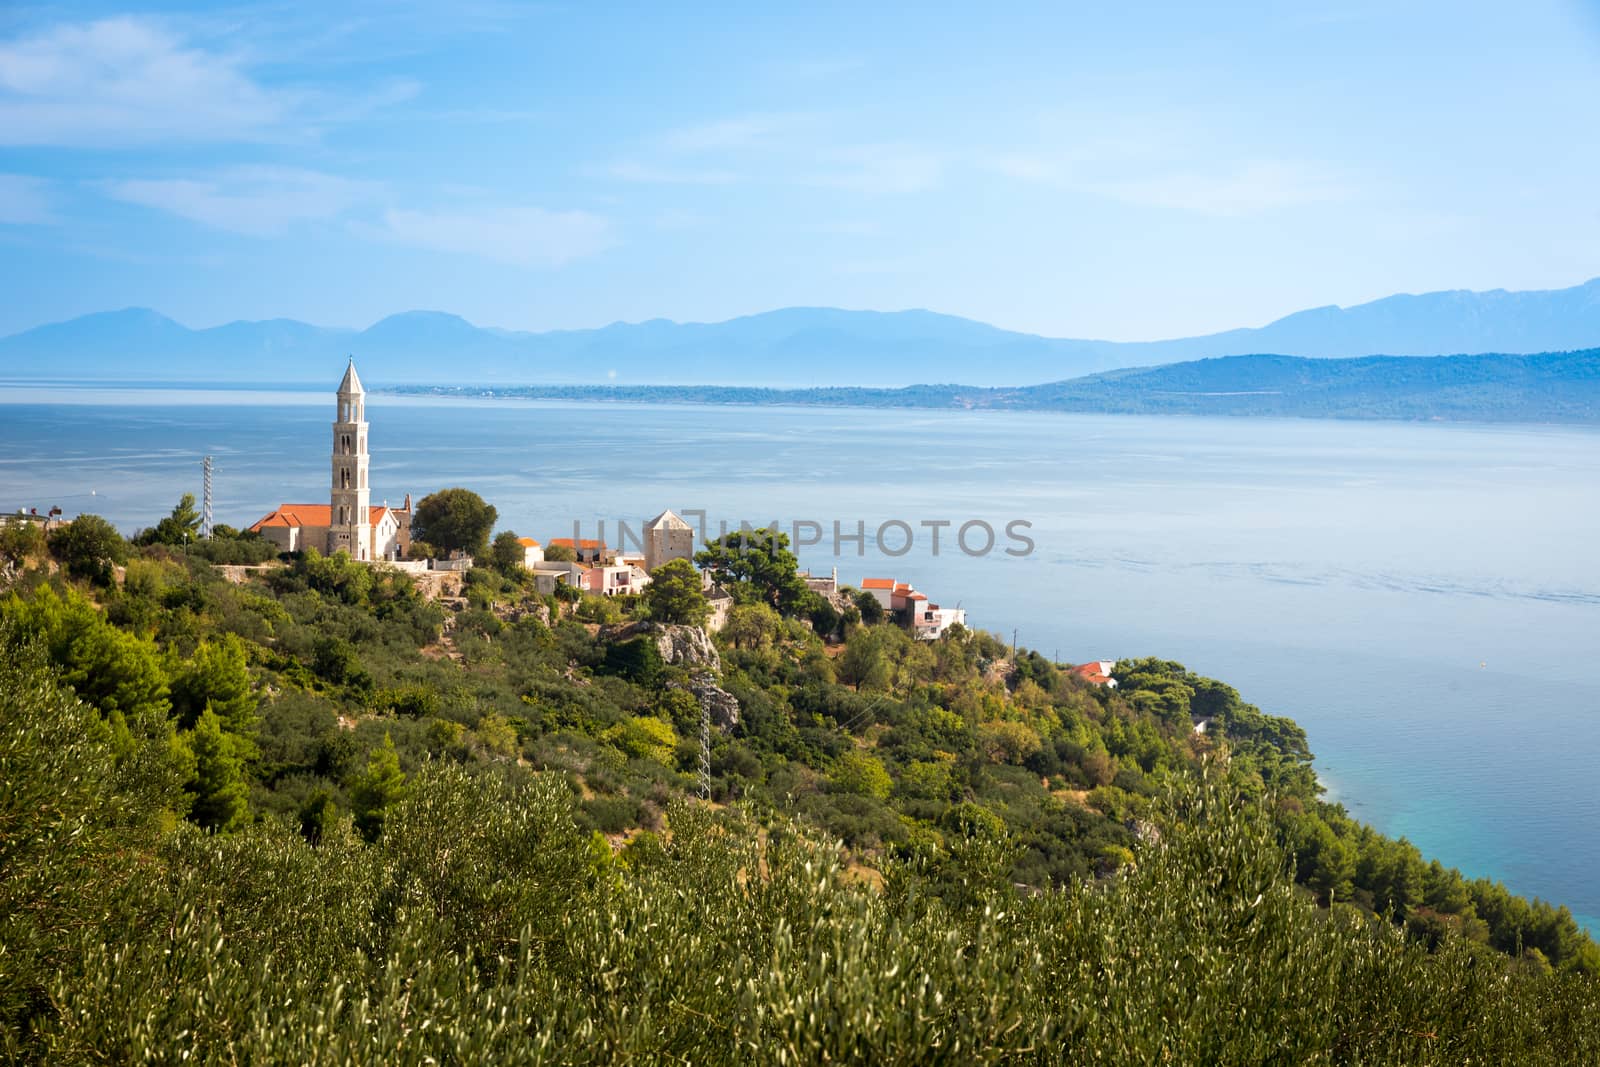 Medieval village at Adriatic coast, Croatia by fisfra